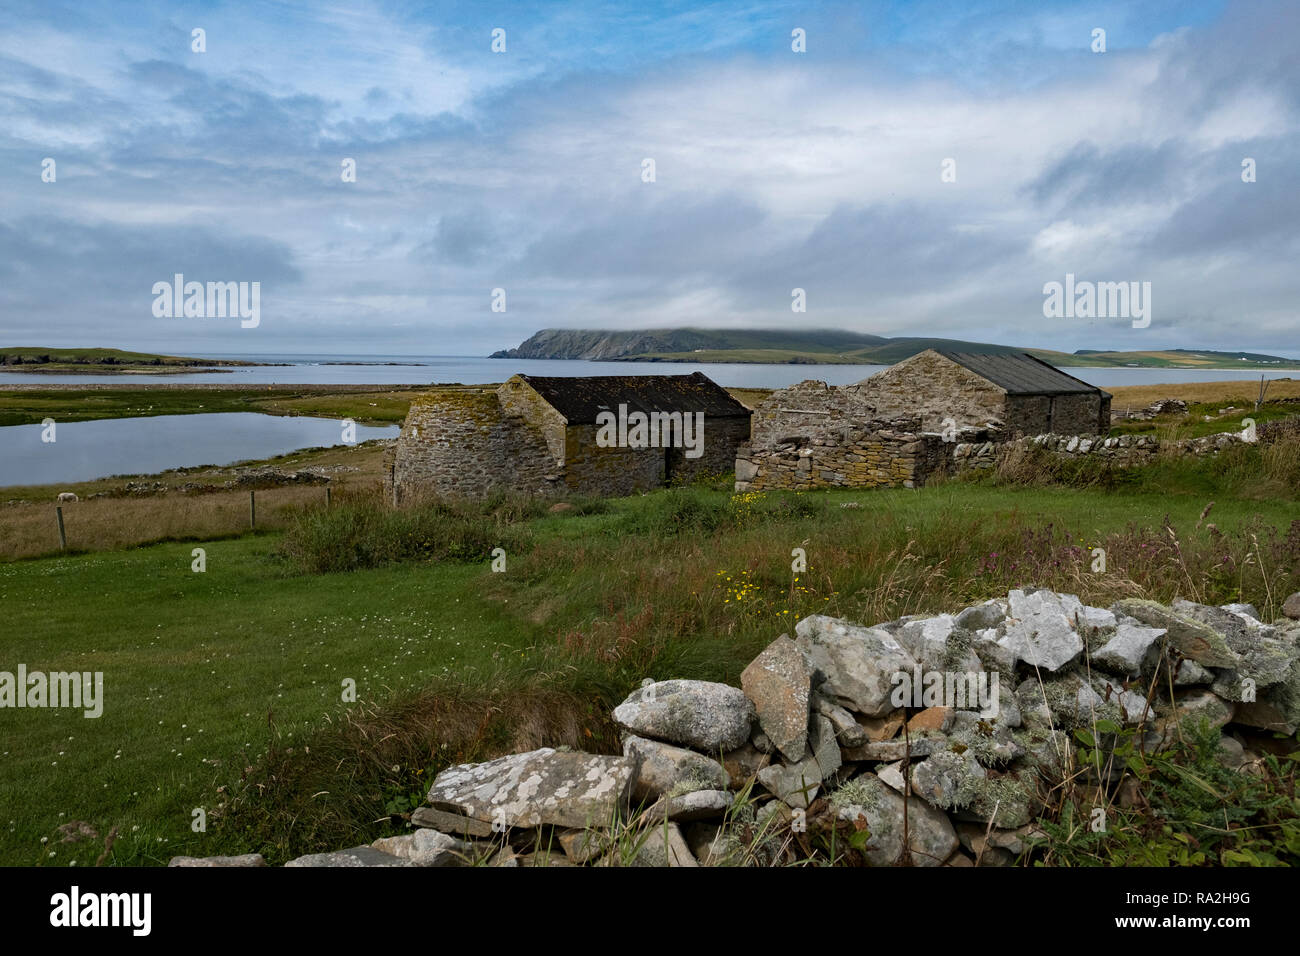 Un vieux croft house avec des murs en pierre donnant sur l'océan Atlantique dans les îles Shetland de l'Écosse sur un jour nuageux Banque D'Images